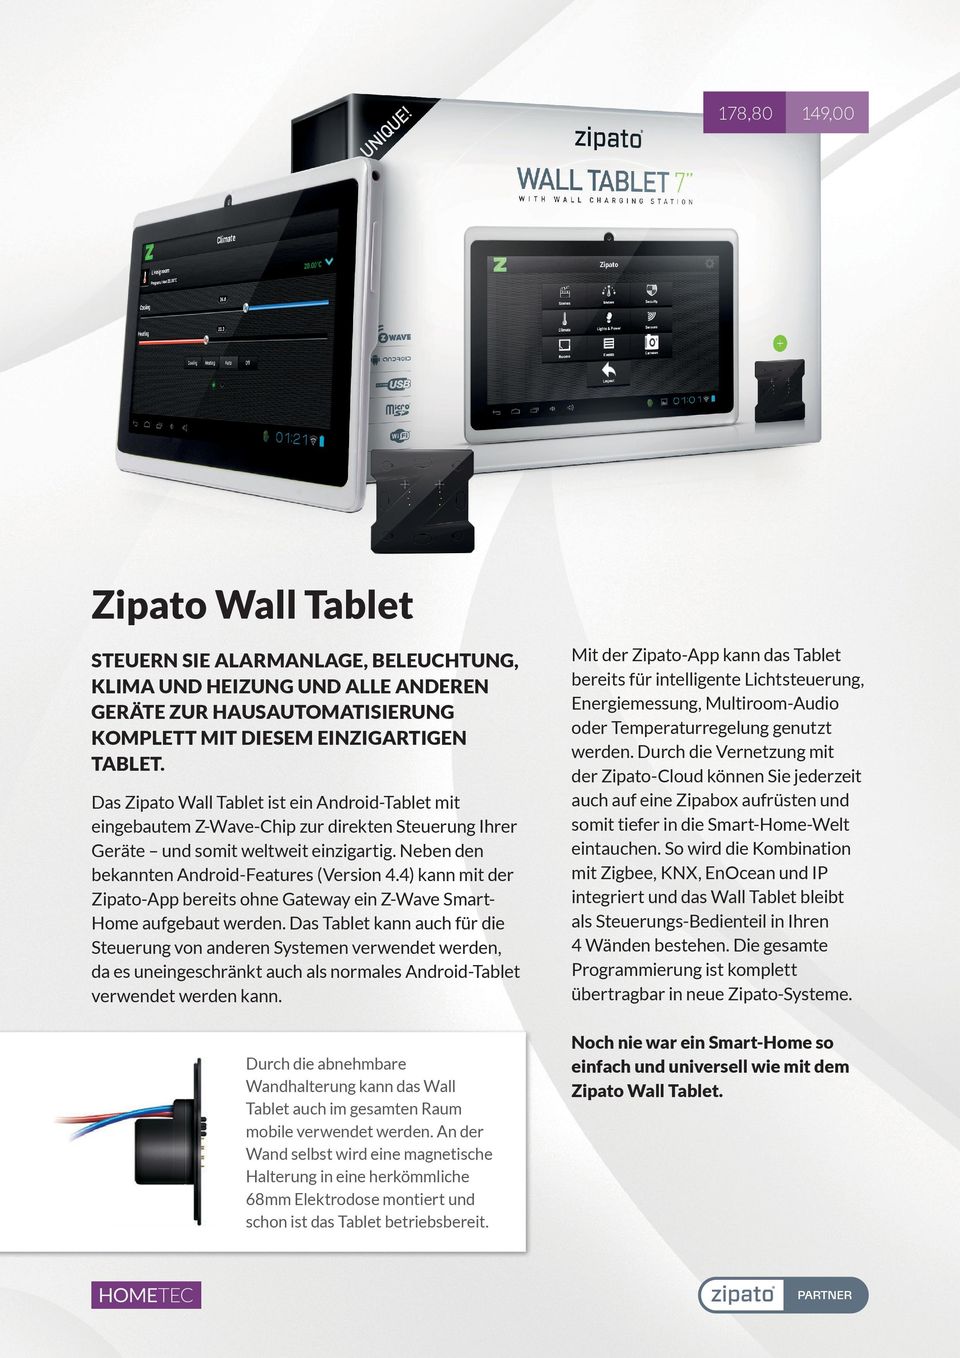 4) kann mit der Zipato-App bereits ohne Gateway ein Z-Wave SmartHome aufgebaut werden.